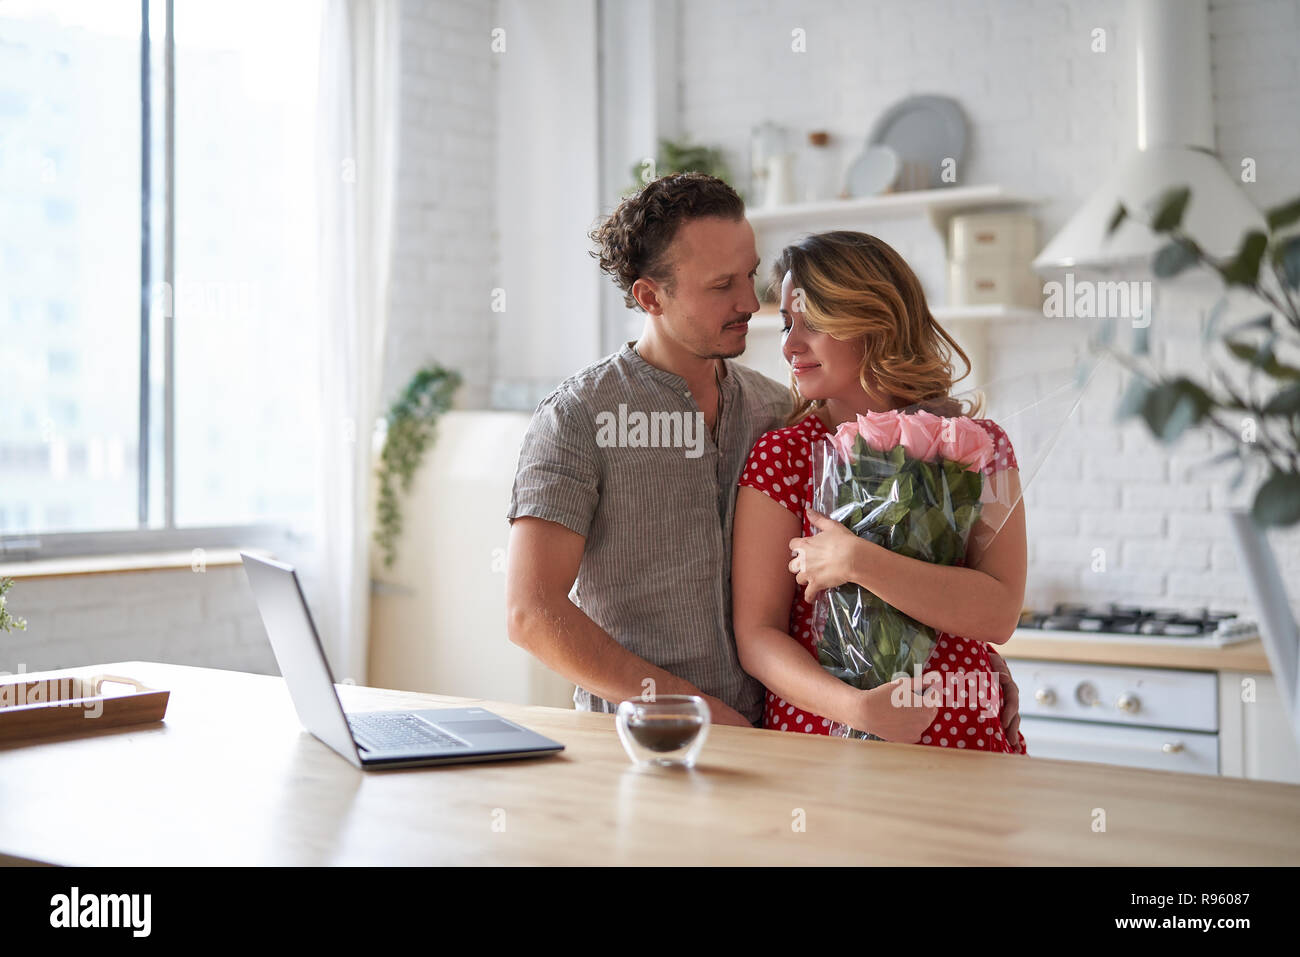 Lassen Sie sich überraschen. Wunderschönes romantisches Paar in der Küche. Junge präsentiert man Blumen zu seinen Geliebten. Das Gefühl von Glück. Stockfoto